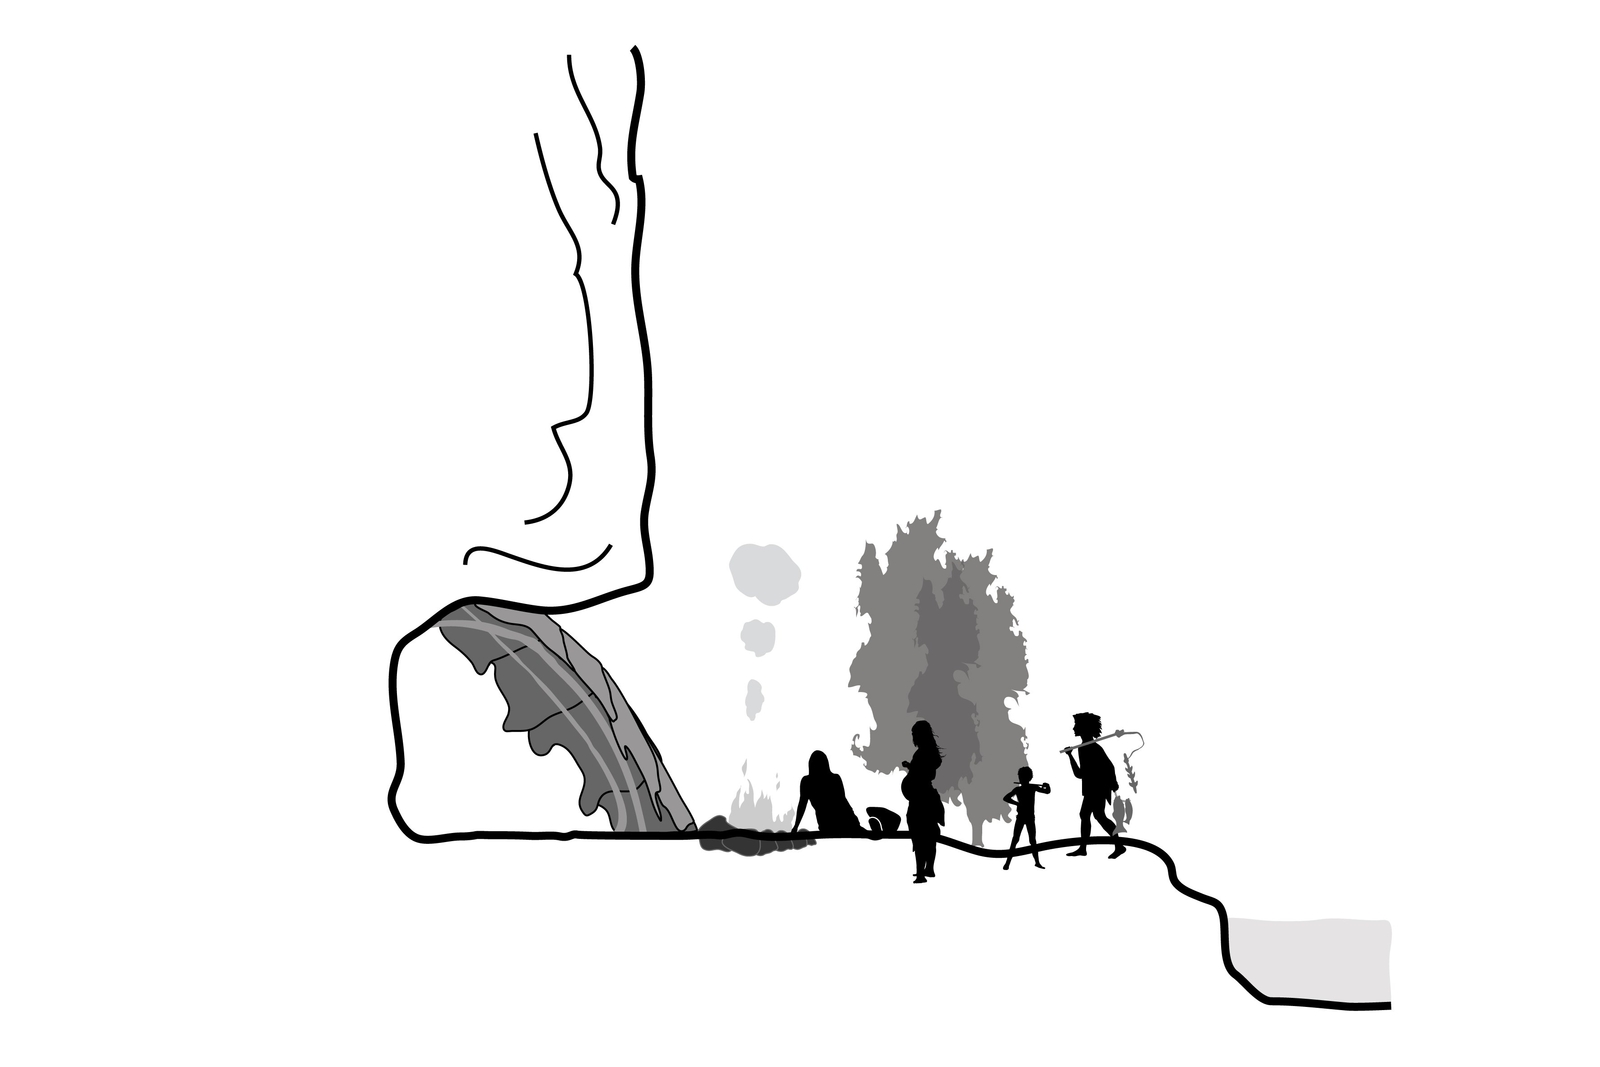 Les groupes humains magdaléniens occupaient l'espace en tenant compte des caractéristiques du milieu, préférant les plaines, les fonds de la vallées et les abris sous-roches aux profondeurs des grottes. Abris sculptés de la préhistoire.